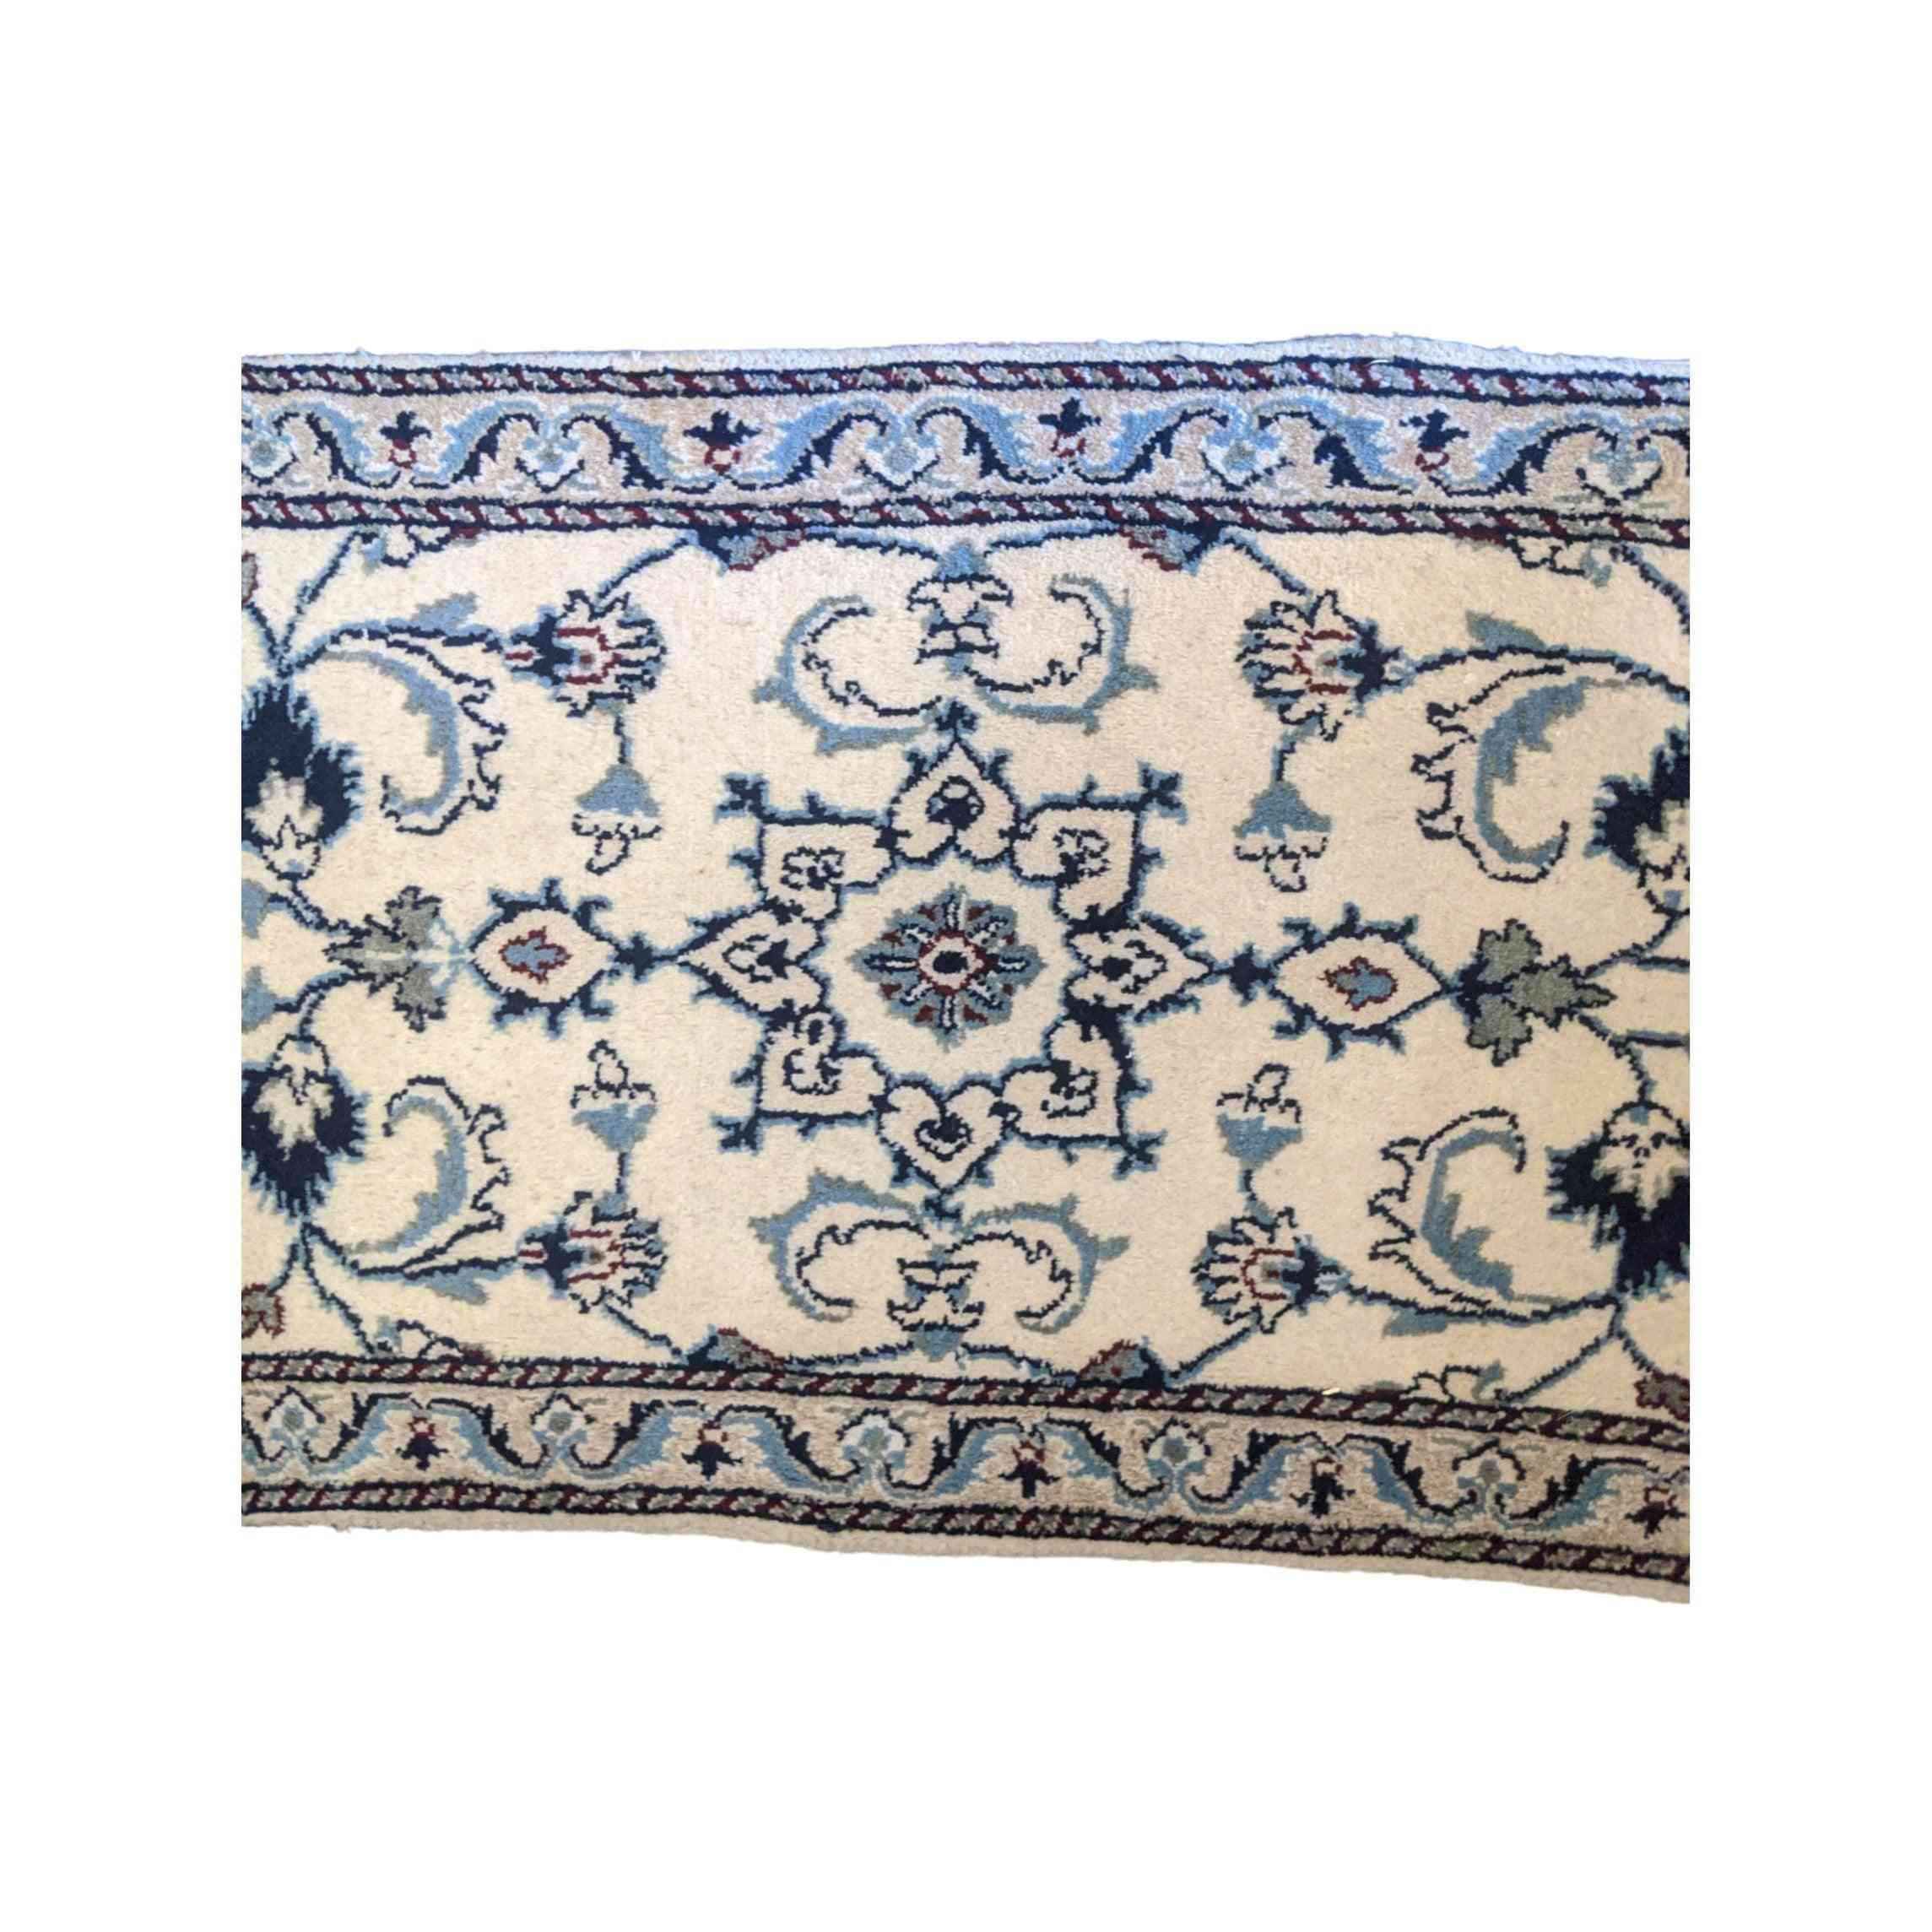 97 x 60 cm Persian Nain Traditional Grey Small Rug - Rugmaster